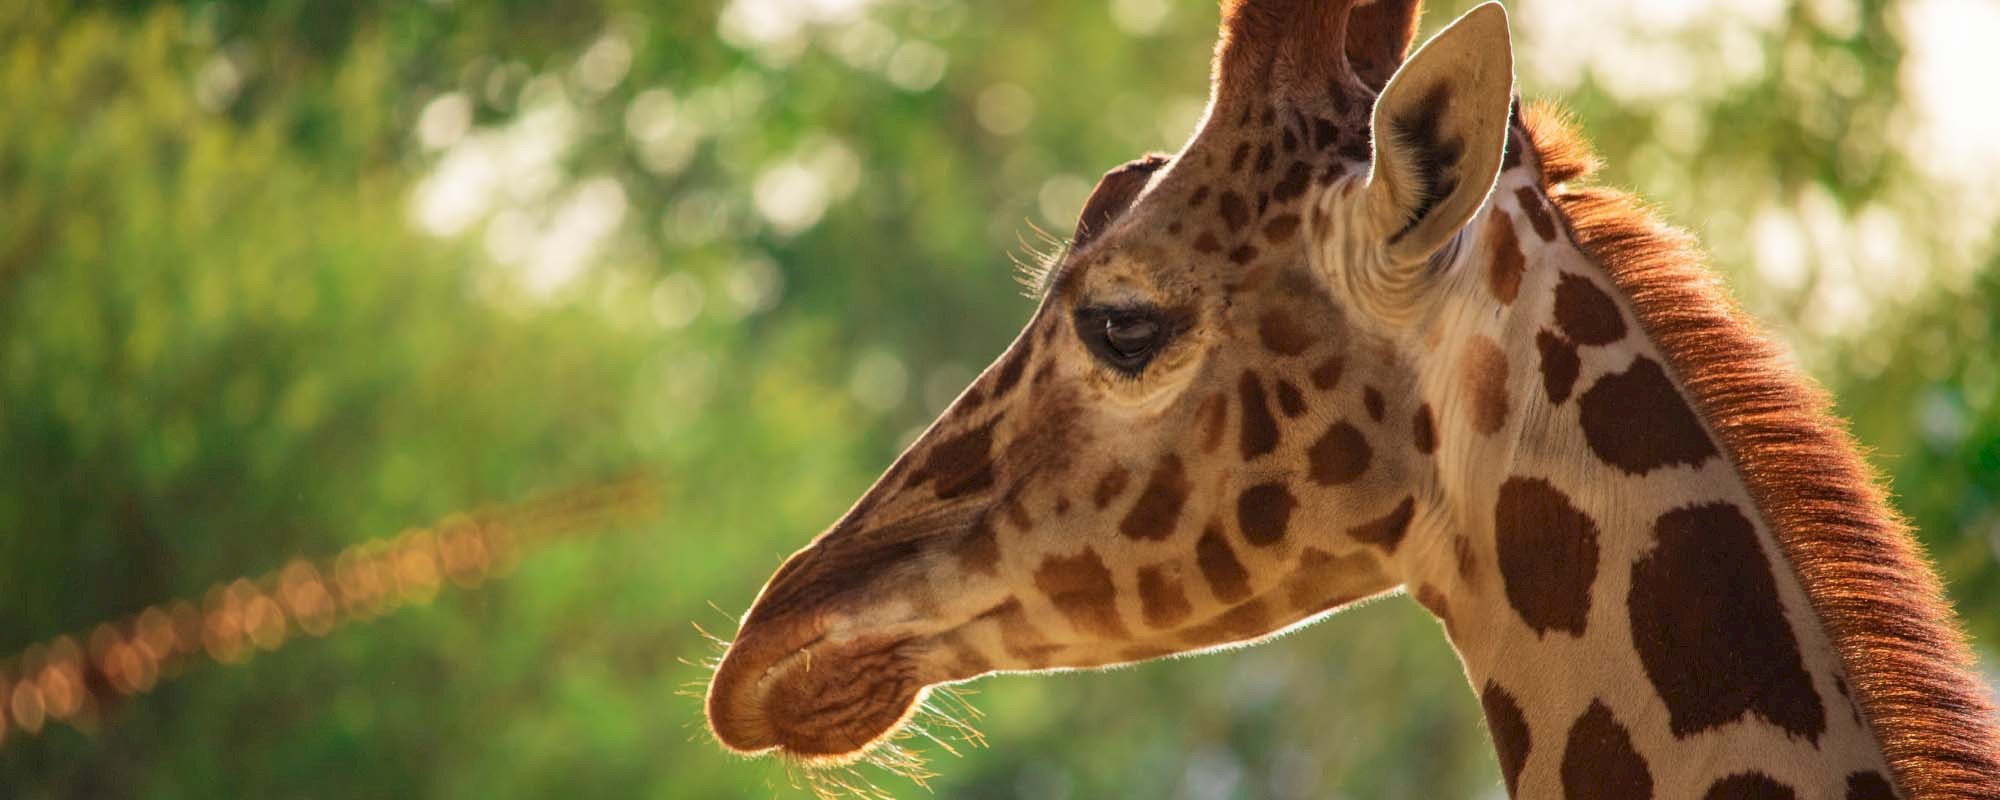 Giraffe Header